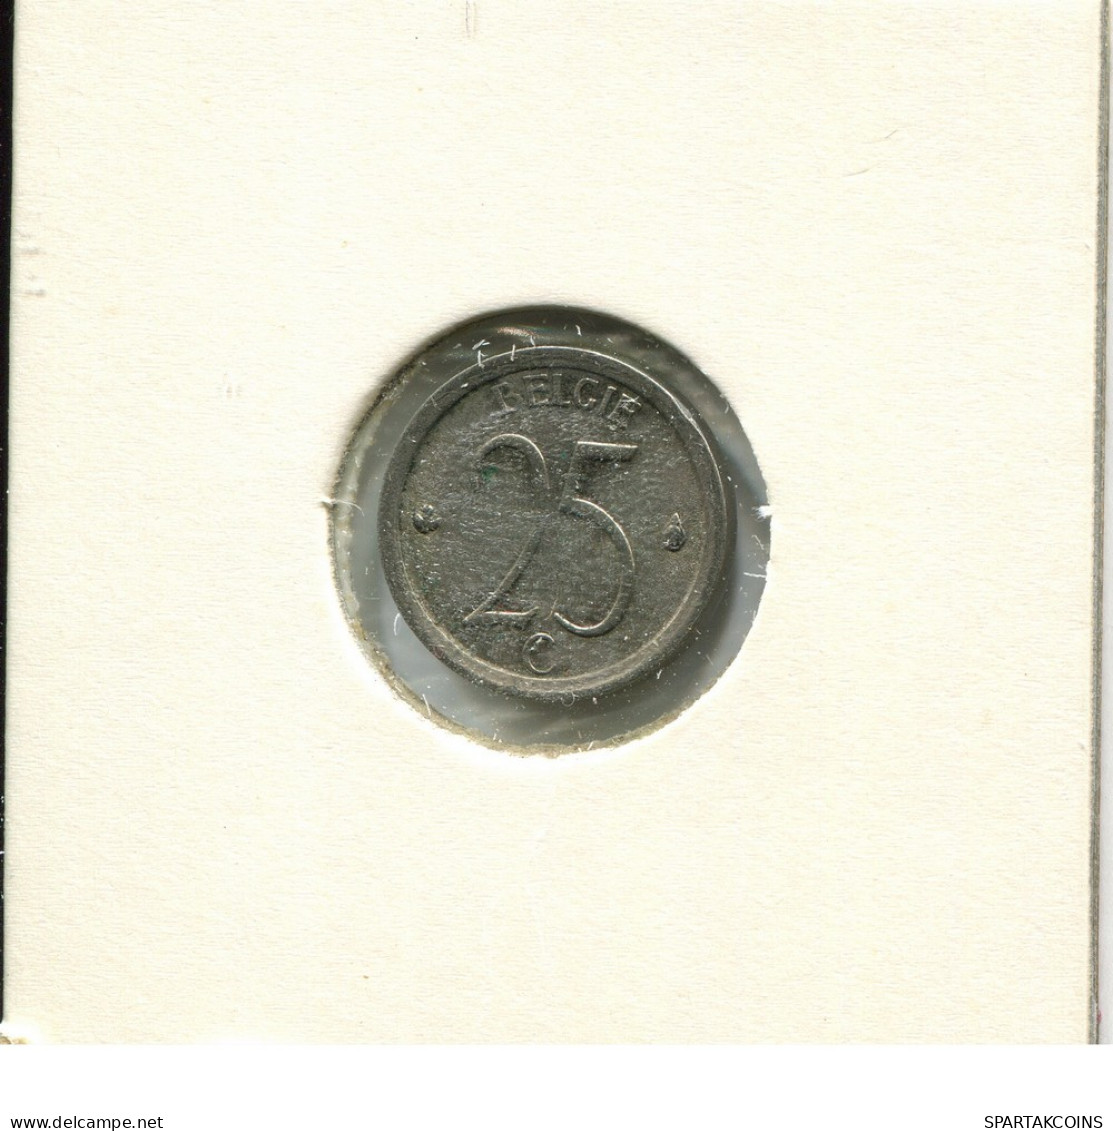 25 CENTIMES 1968 DUTCH Text BELGIUM Coin #AU606.U - 25 Cents